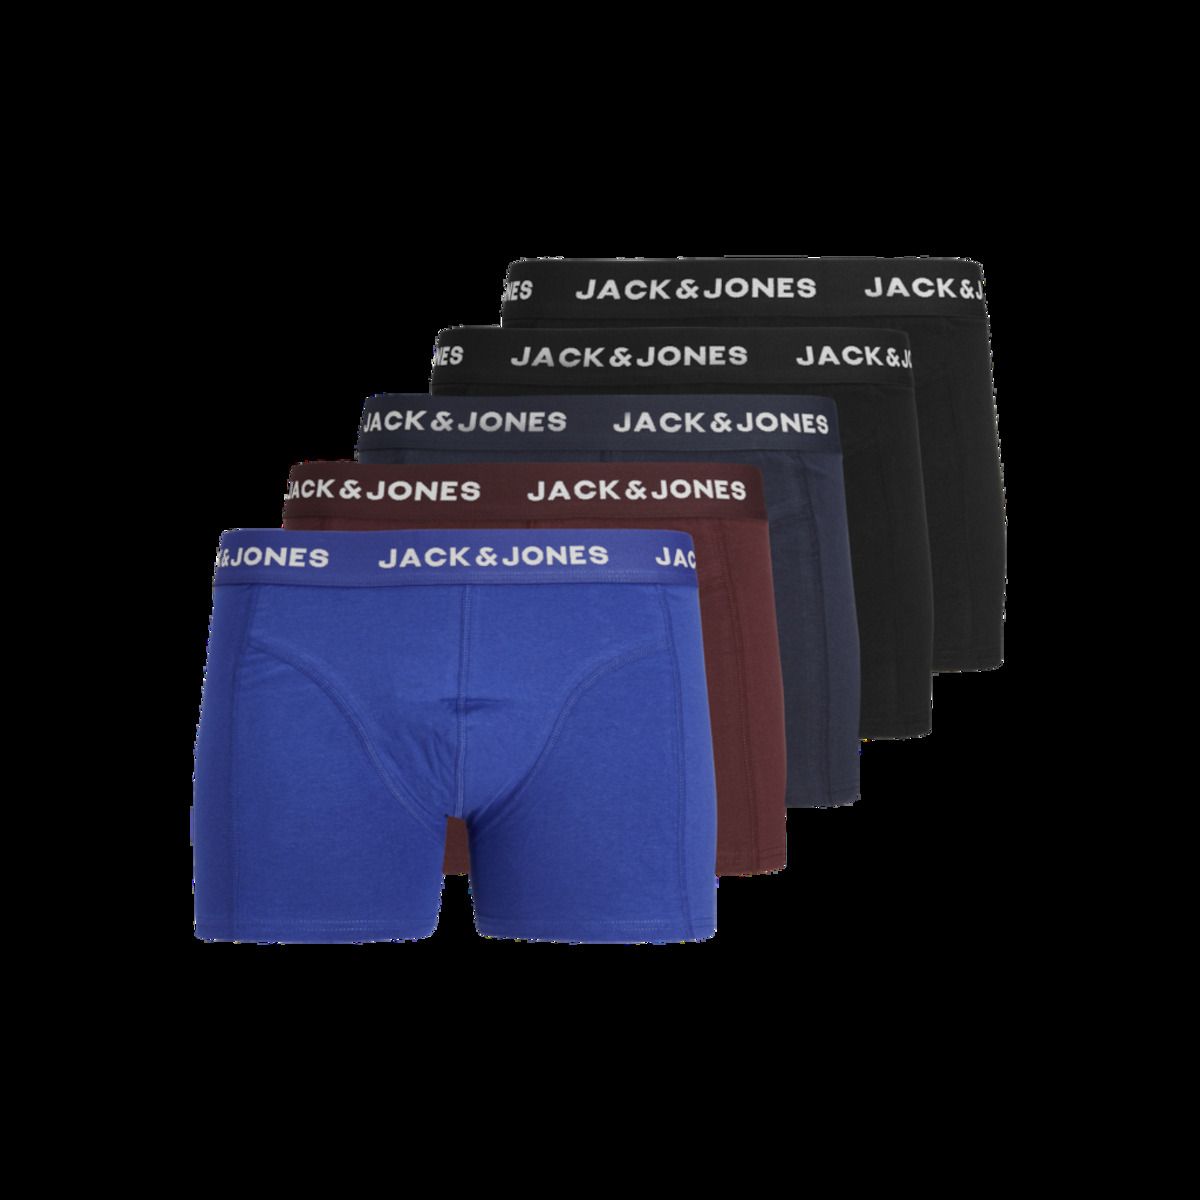 Jack & Jones Erkek Marka Logolu Elastik Bantlı Pamuklu Günlük Kullanıma Uygun Mavi-Gri-Bordo-Siyah-Siyah Boxer 12